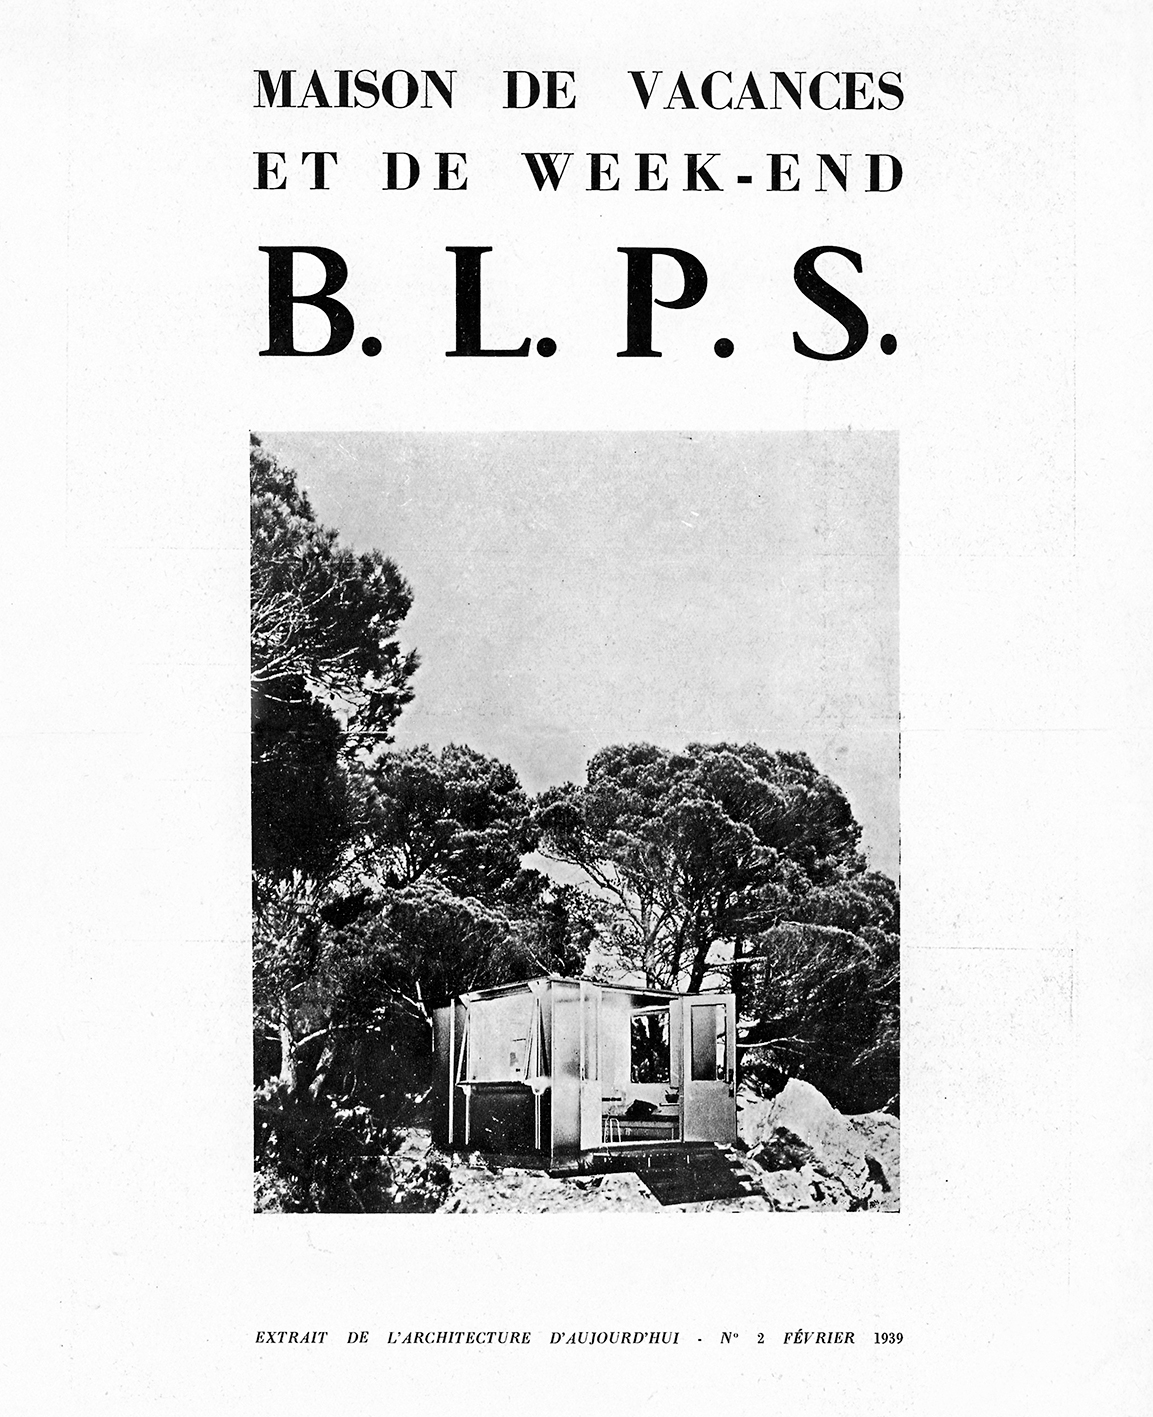 Demountable week-end house BLPS (architects E. Beaudouin and M. Lods, designer Ateliers Jean Prouvé, constructor Les Forges de Strasbourg, 1937).